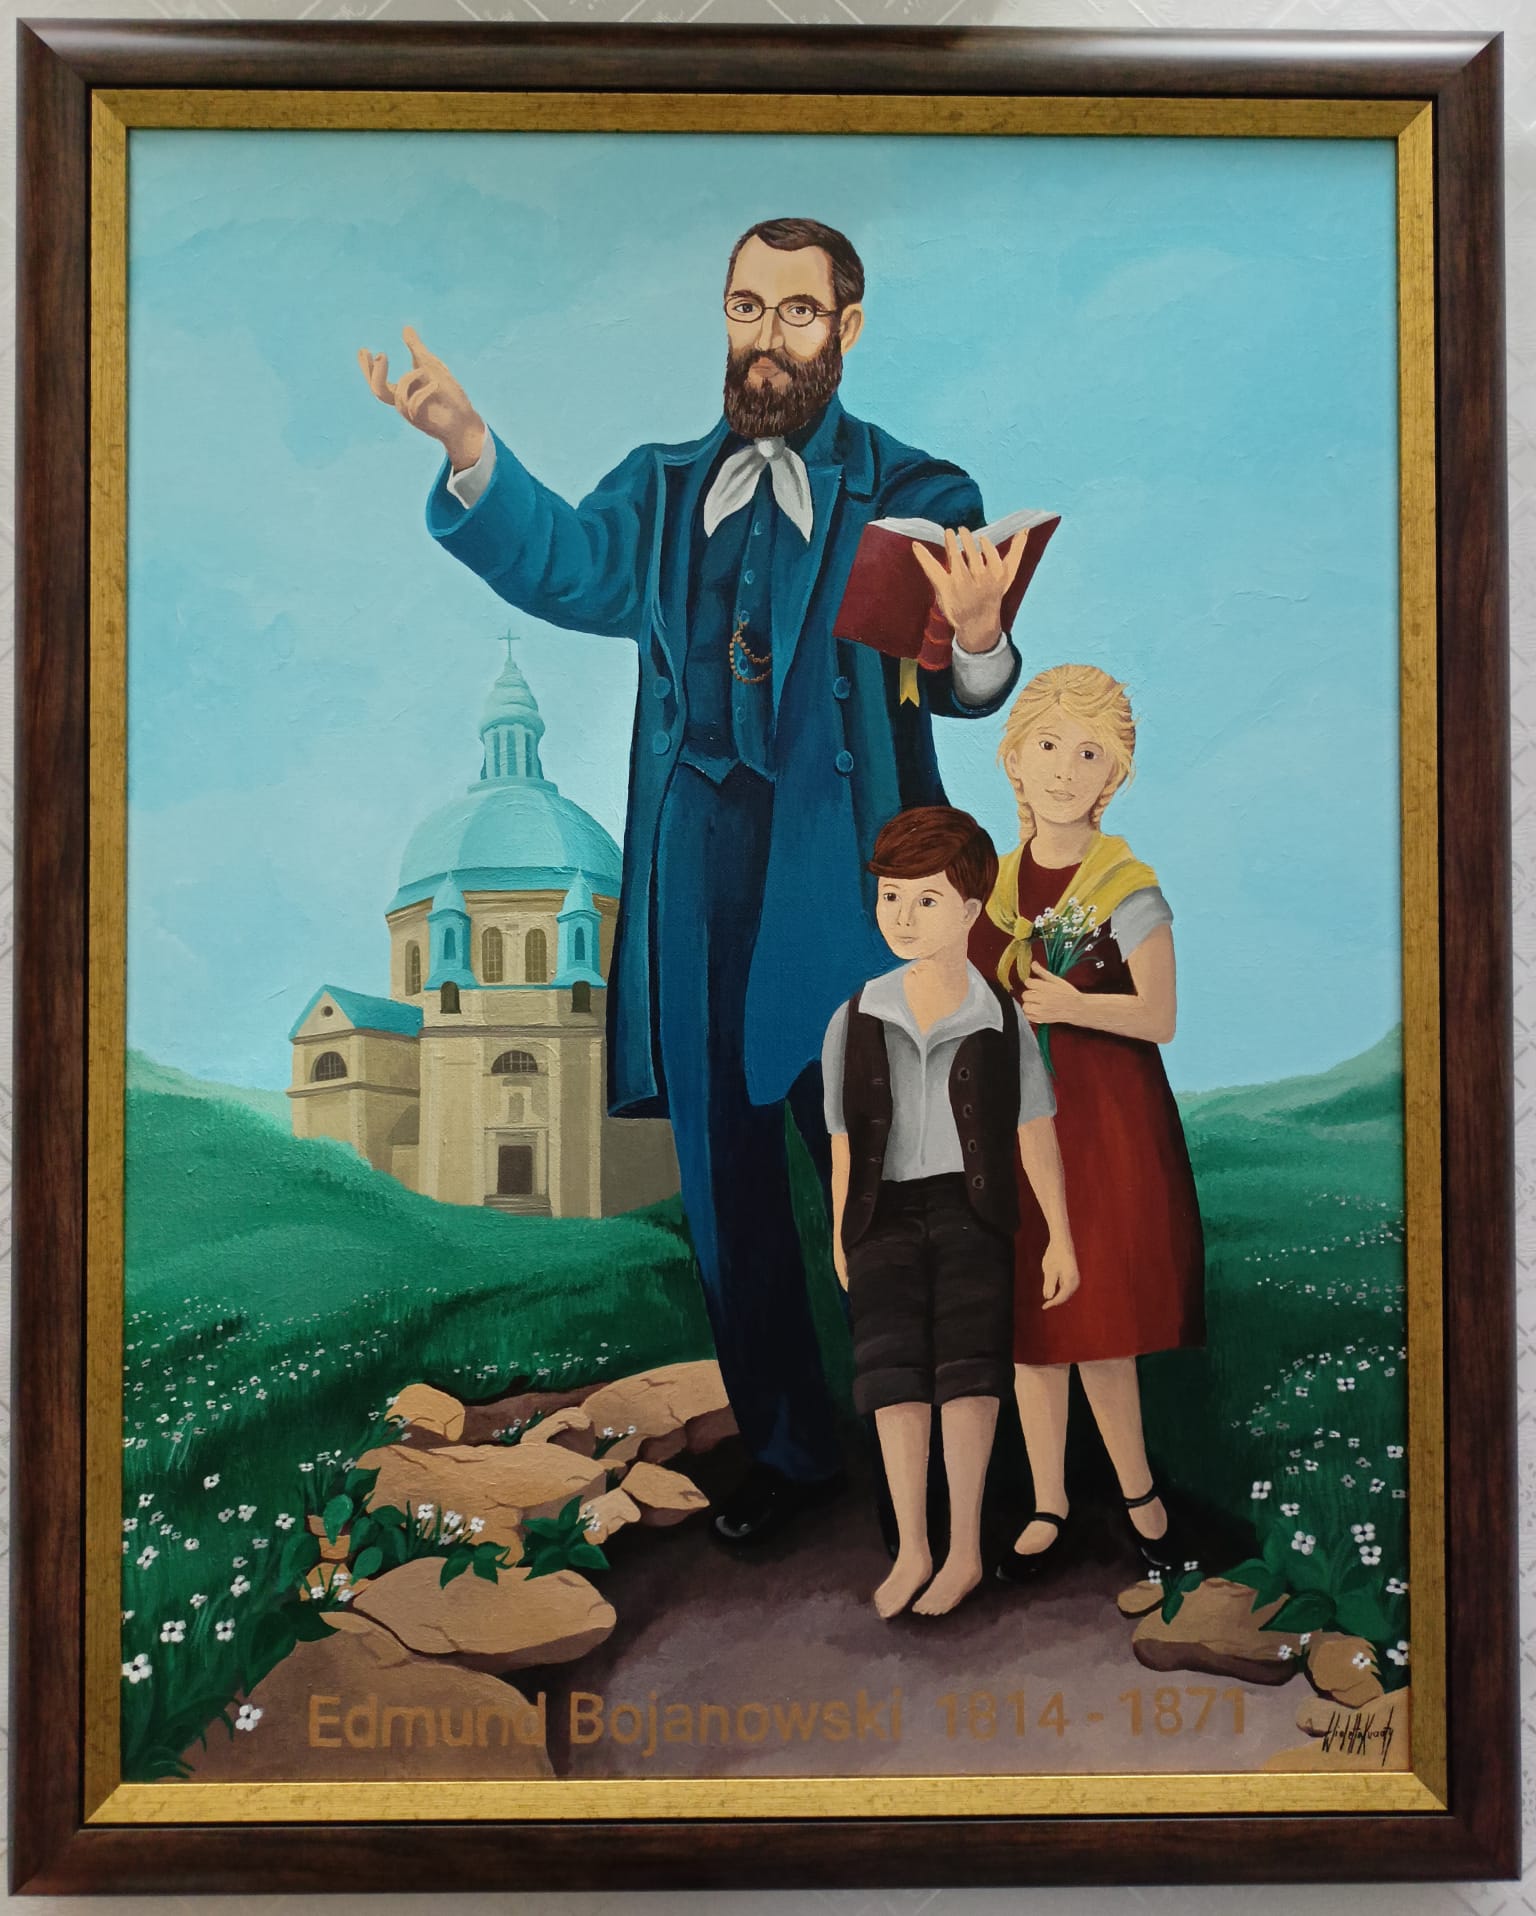 Obraz bł. Edmunda Bojanowskiego znajduje się w rogowskim kościele. Fot. Siostra Janina